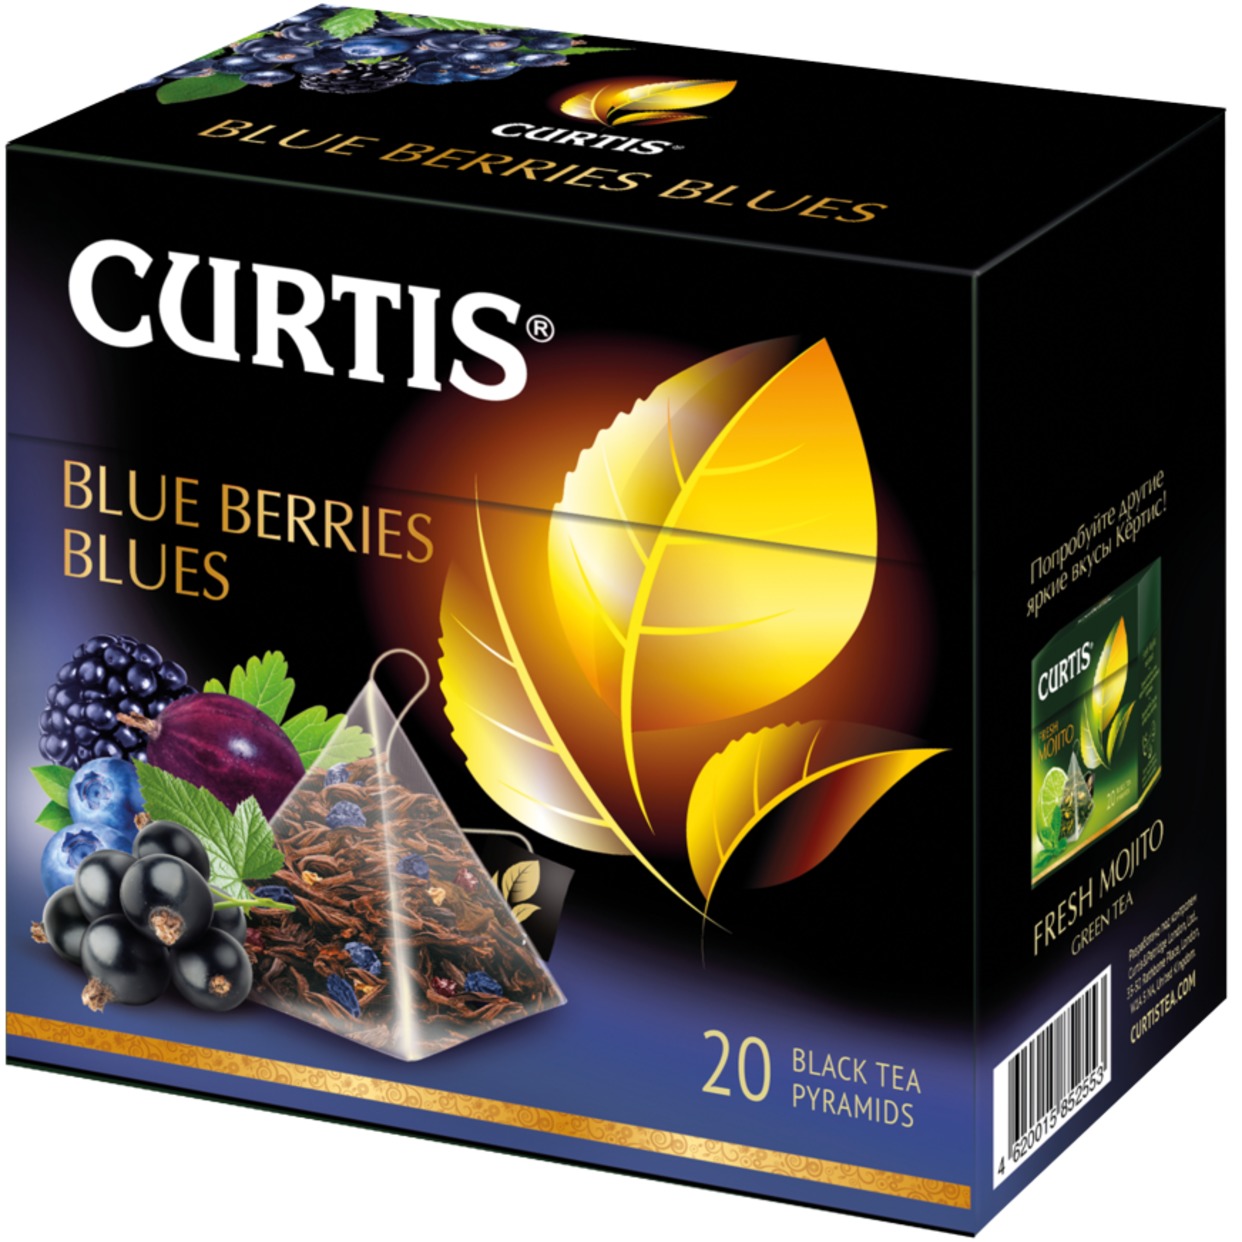 Blue Berries Blues черный аромат. Лист. чай с черной смор., ежевикой, черникой и лепест. цветков василька в пирам. 20 X 1.8 г по акции в Пятерочке